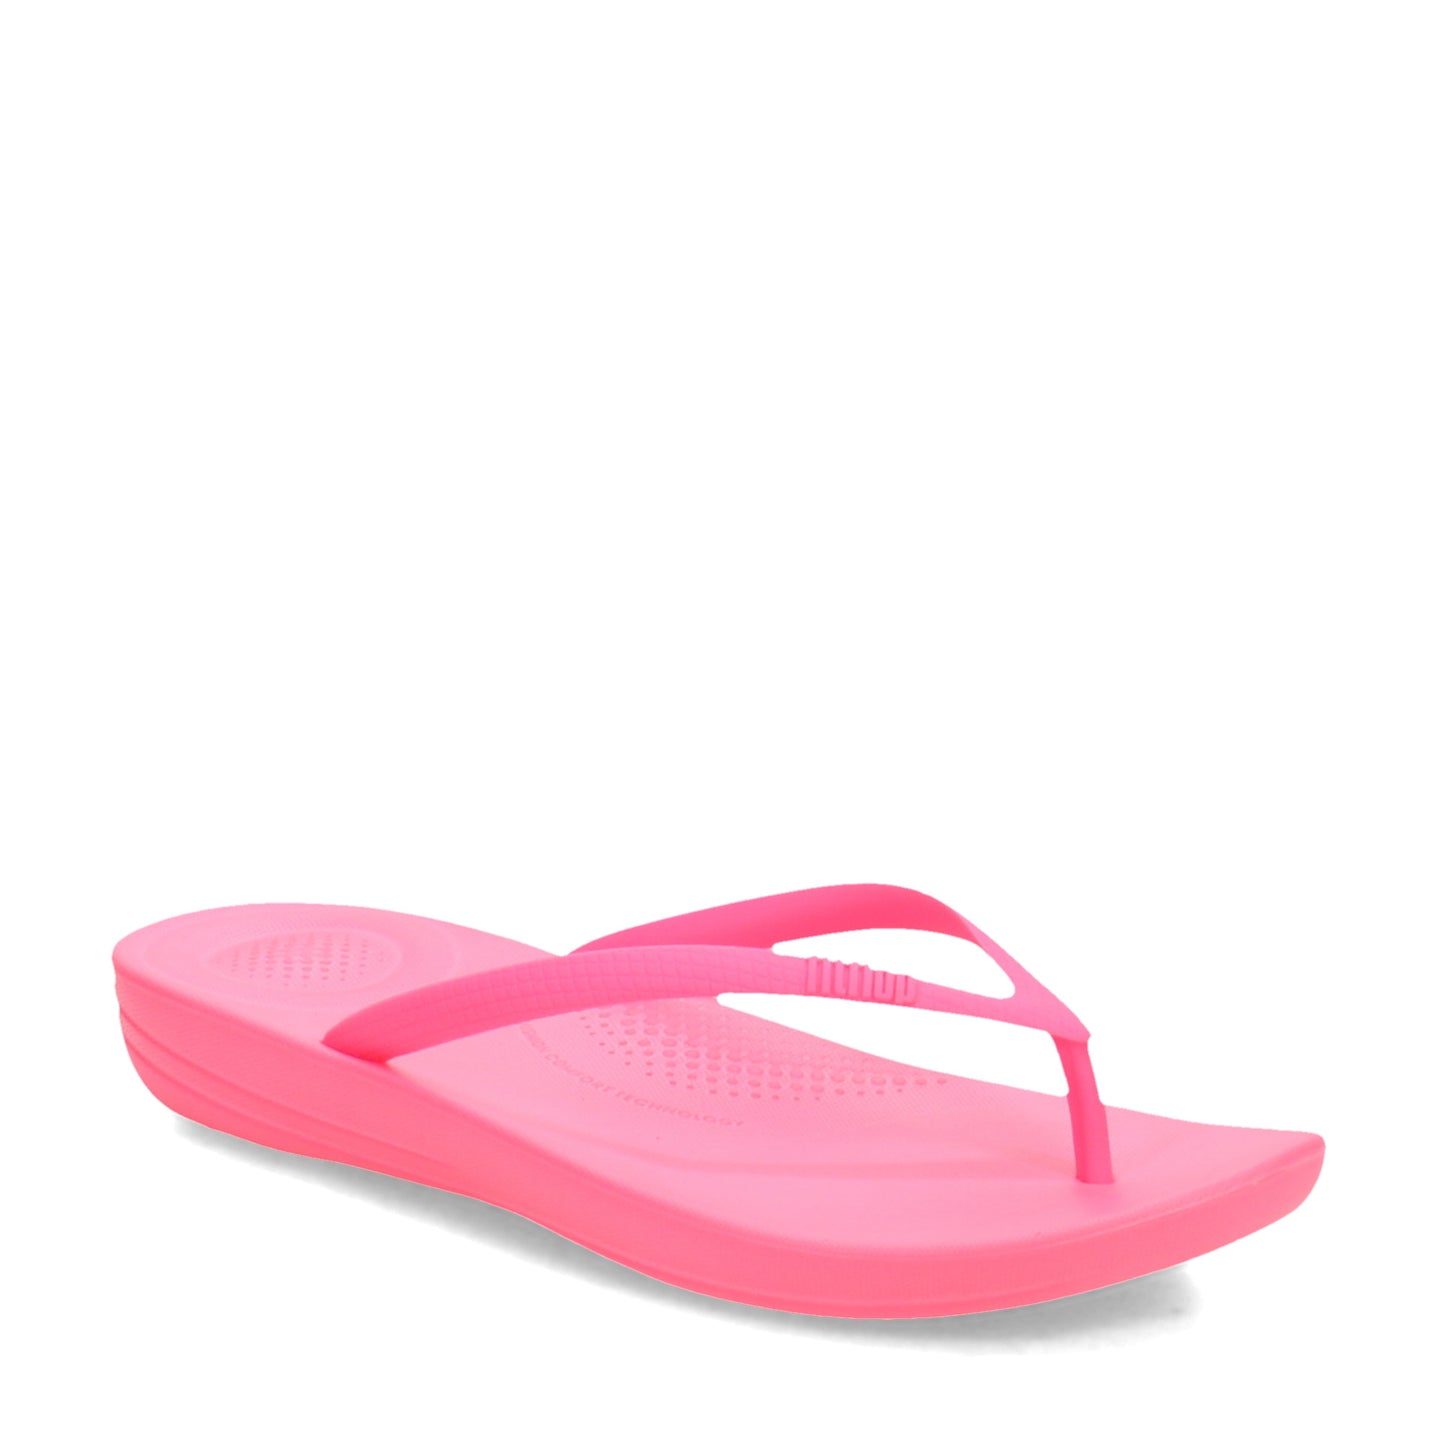 Peltz Shoes  Women's FitFlop iQushion Flip-Flop Pop Pink E54-A38